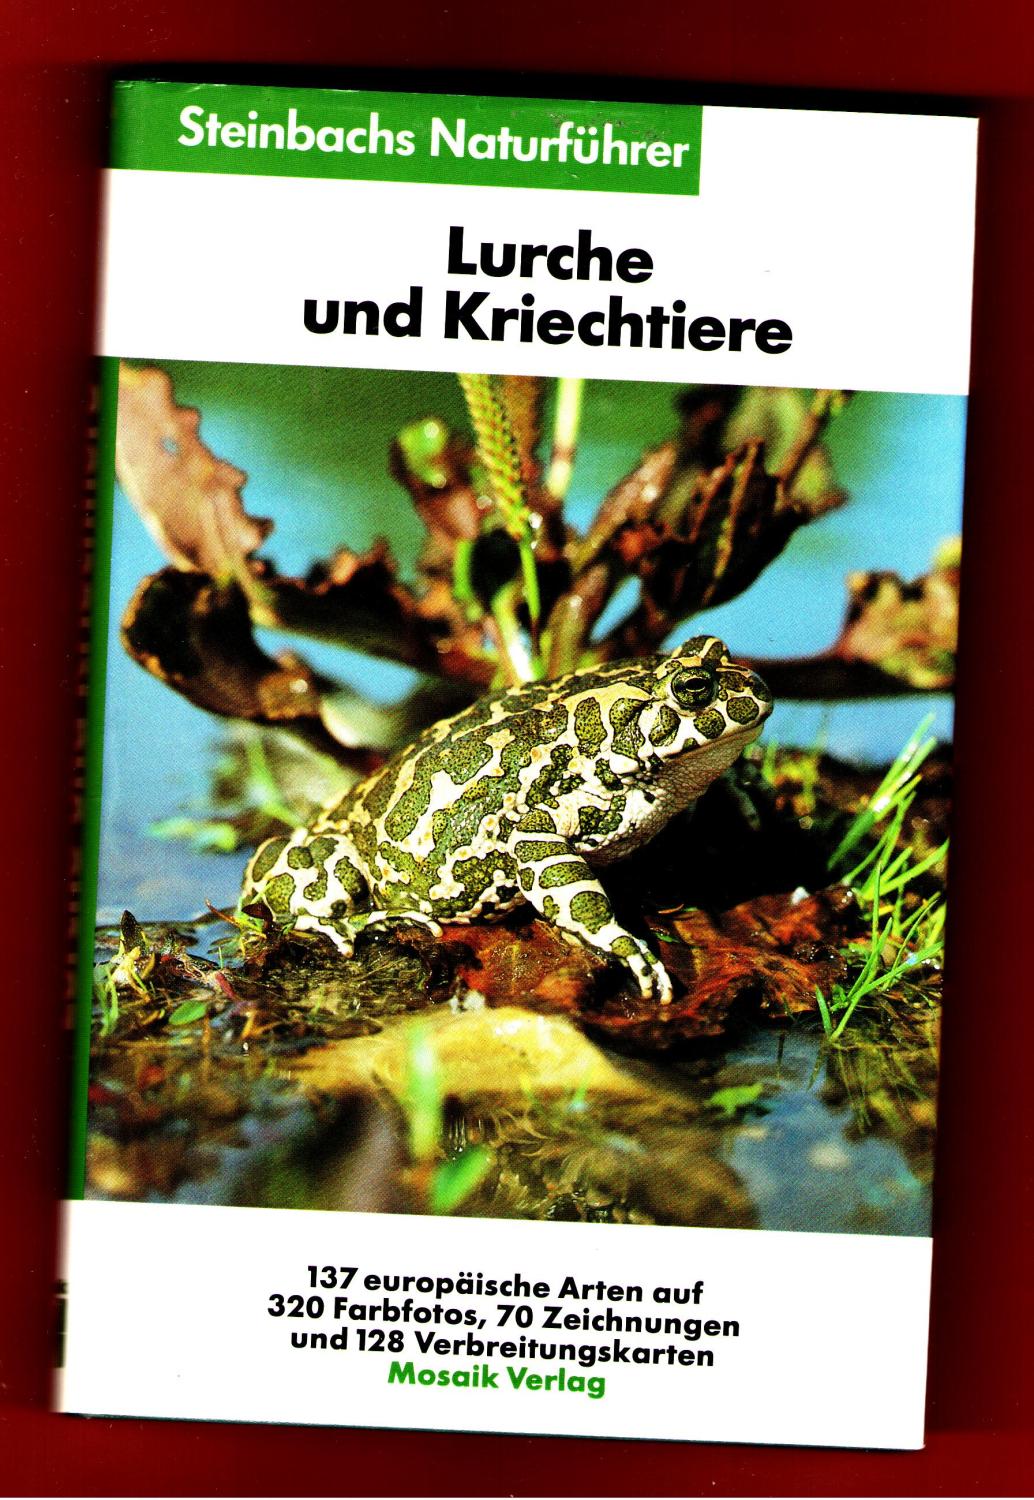 Lurche und Kriechtiere. Steinbachs Naturführer.